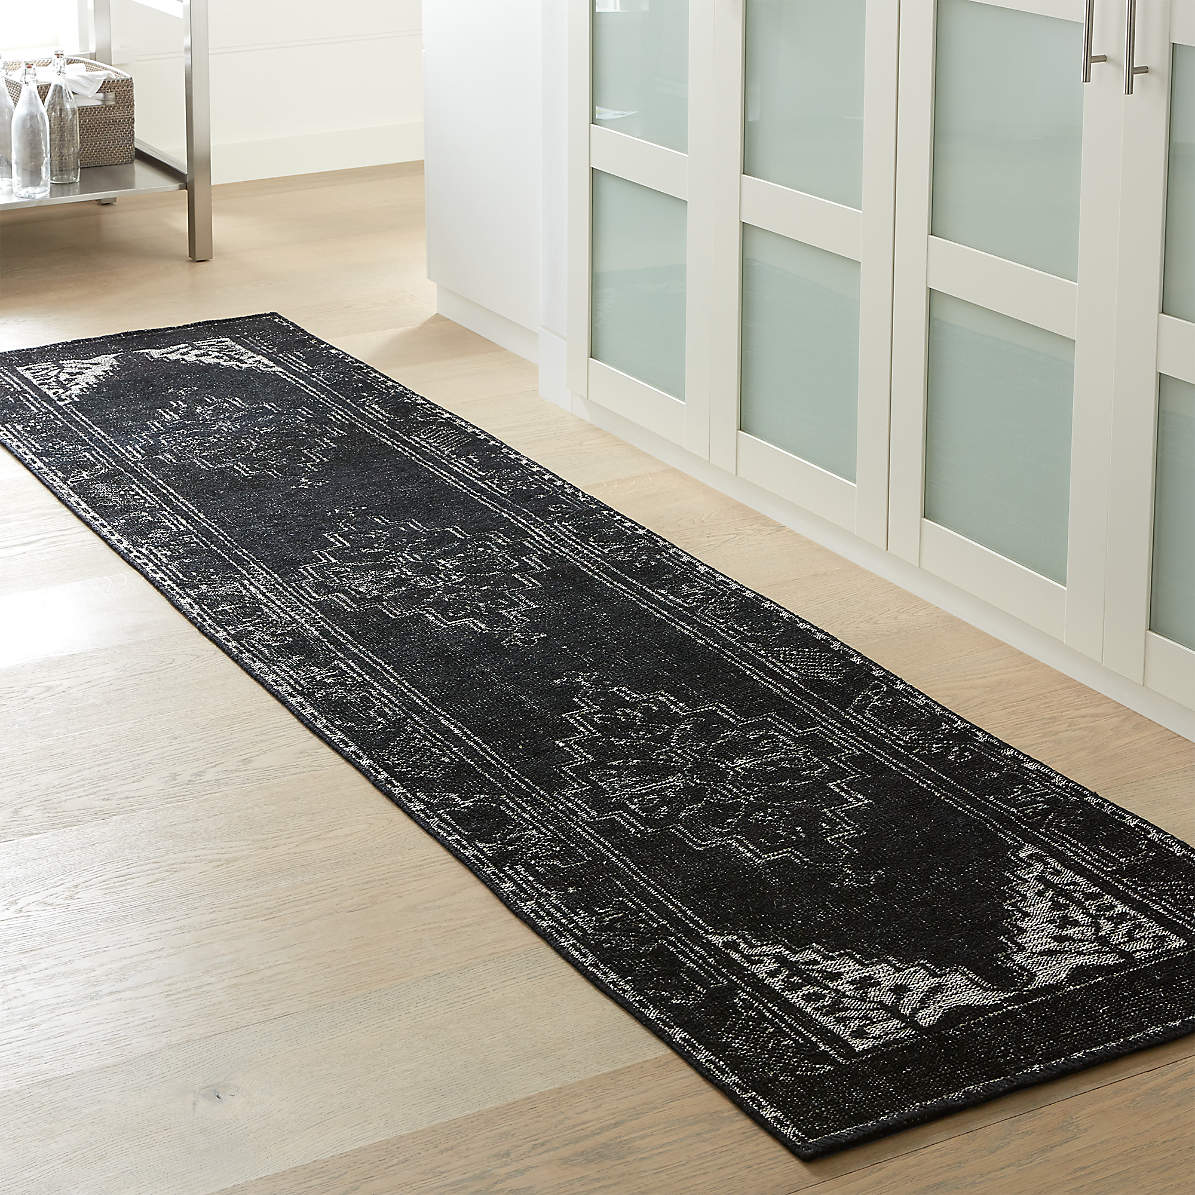 Oriental Area rug Traditional living room runner door mat 